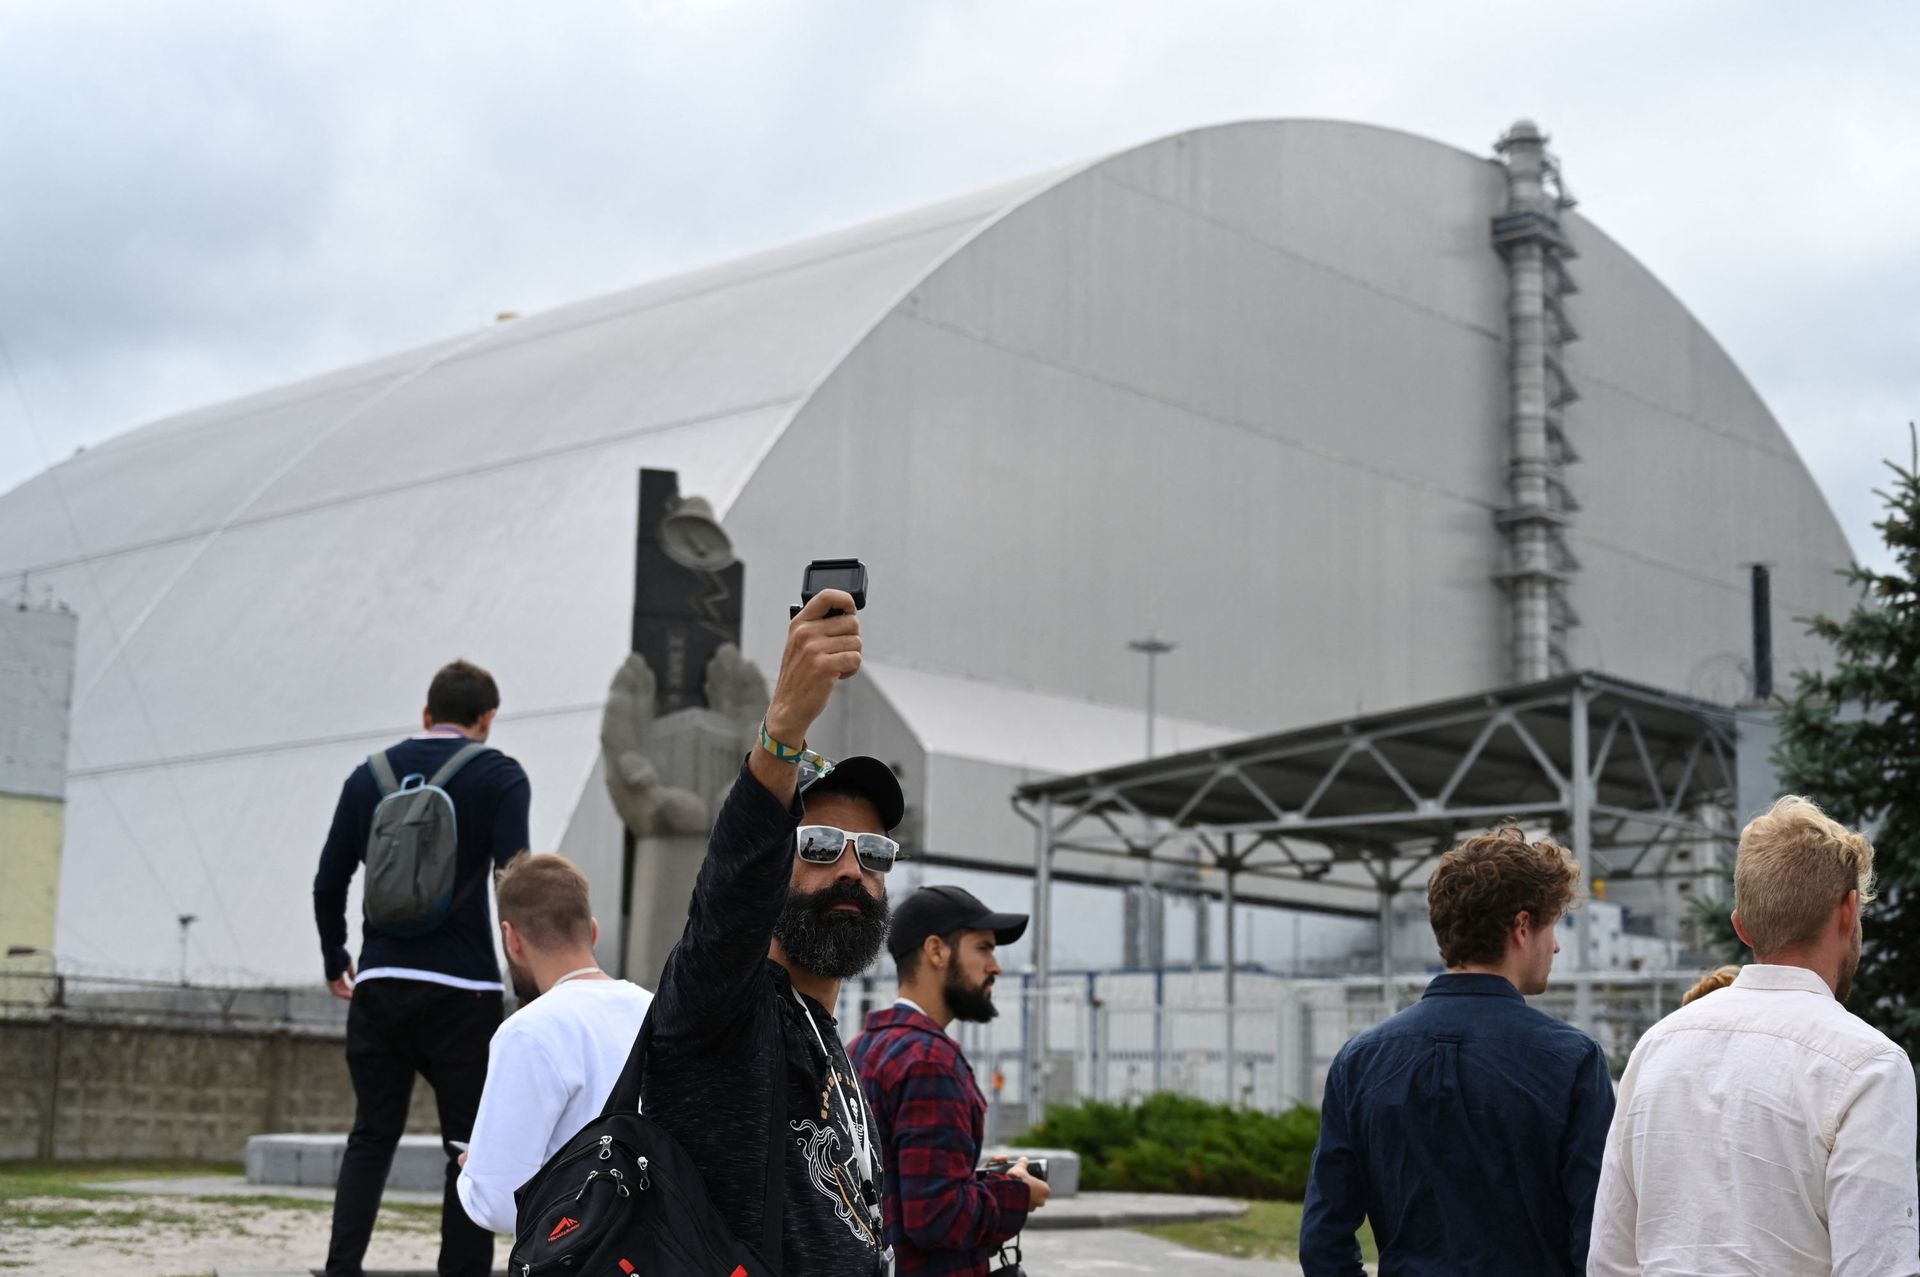 Des touristes devant le nouveau dôme métallique entourant le réacteur détruit, à l'usine de Tchernobyl, en Ukraine en 2019.La série à succès "Tchernobyl" a amené une nouvelle génération de touristes dans la zone de la catastrophe nucléaire, mais les guide